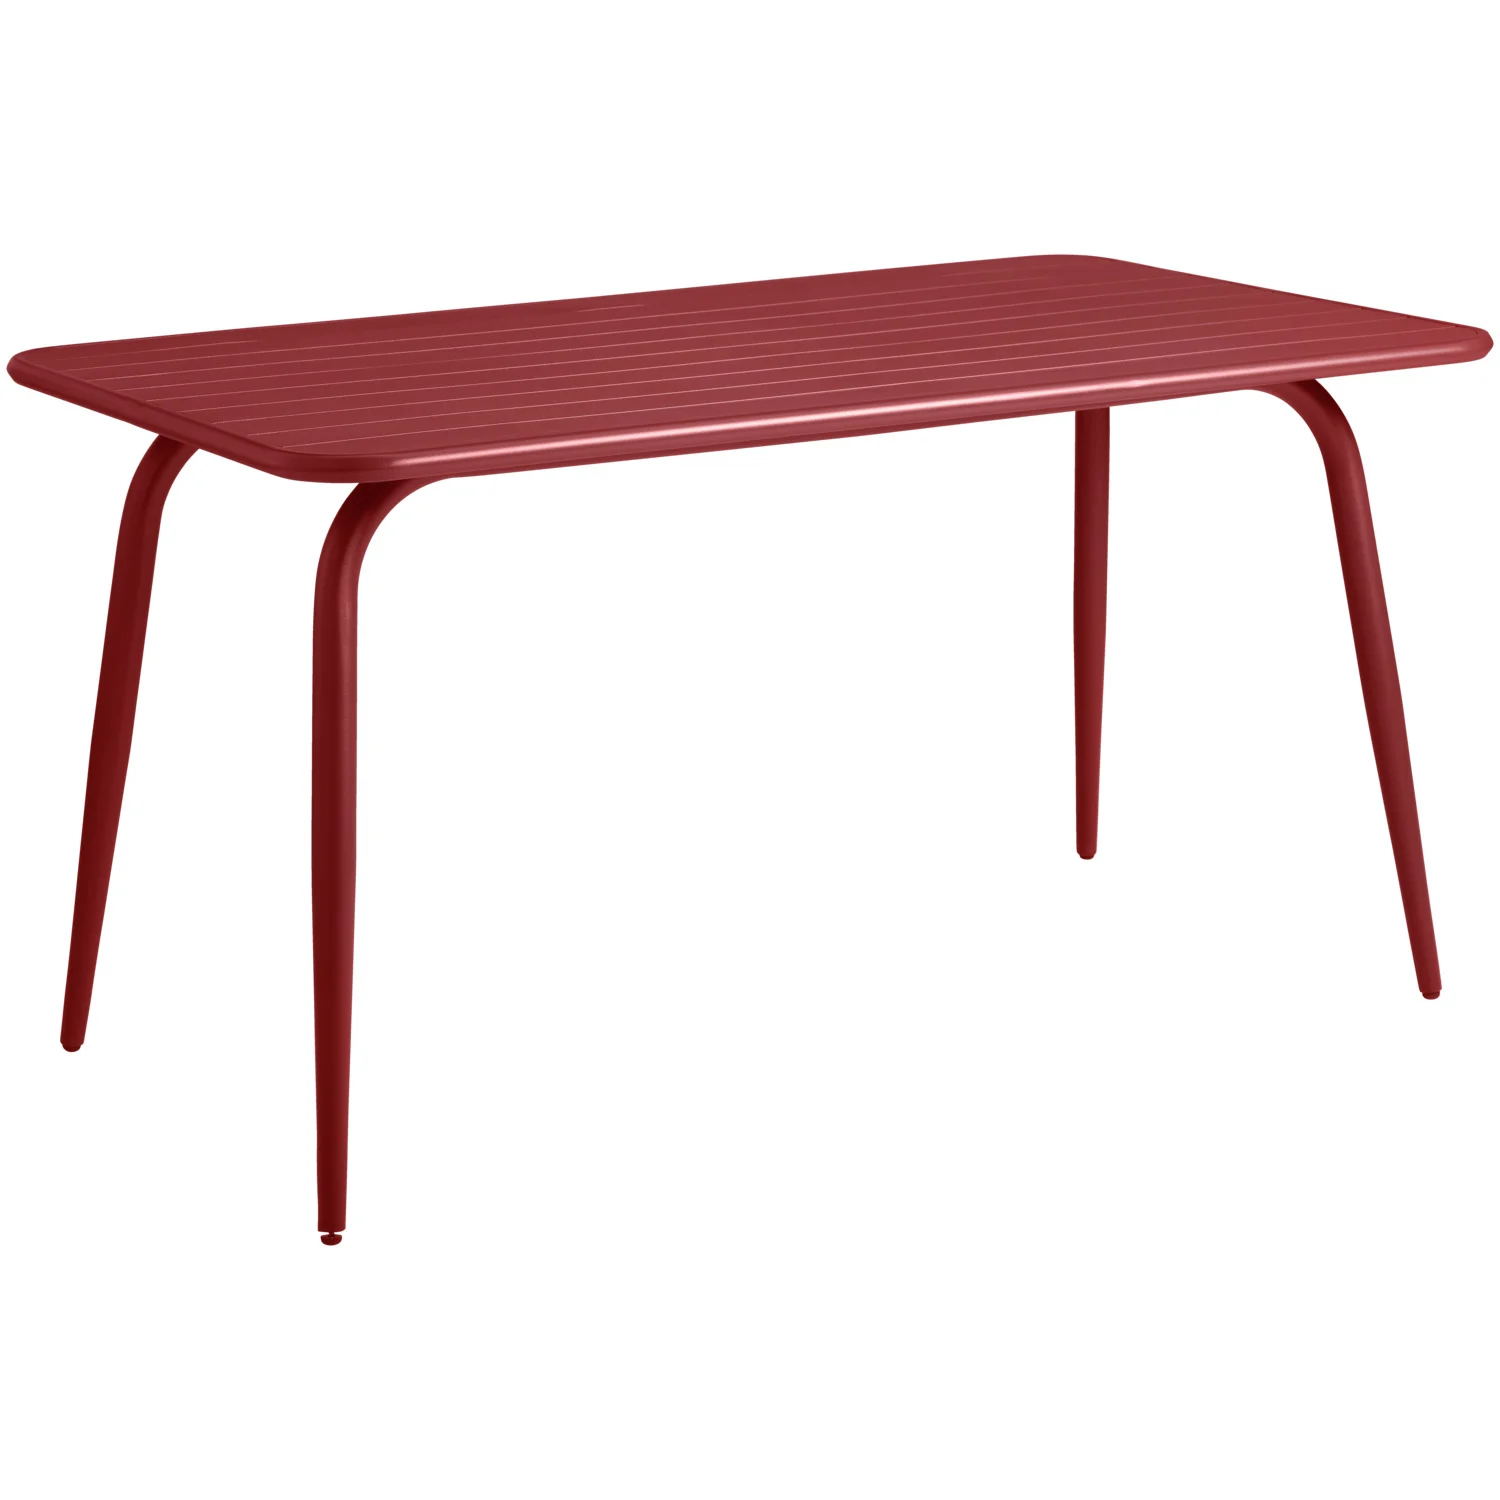 Stůl Bevera, 140x80x74 cm, červená